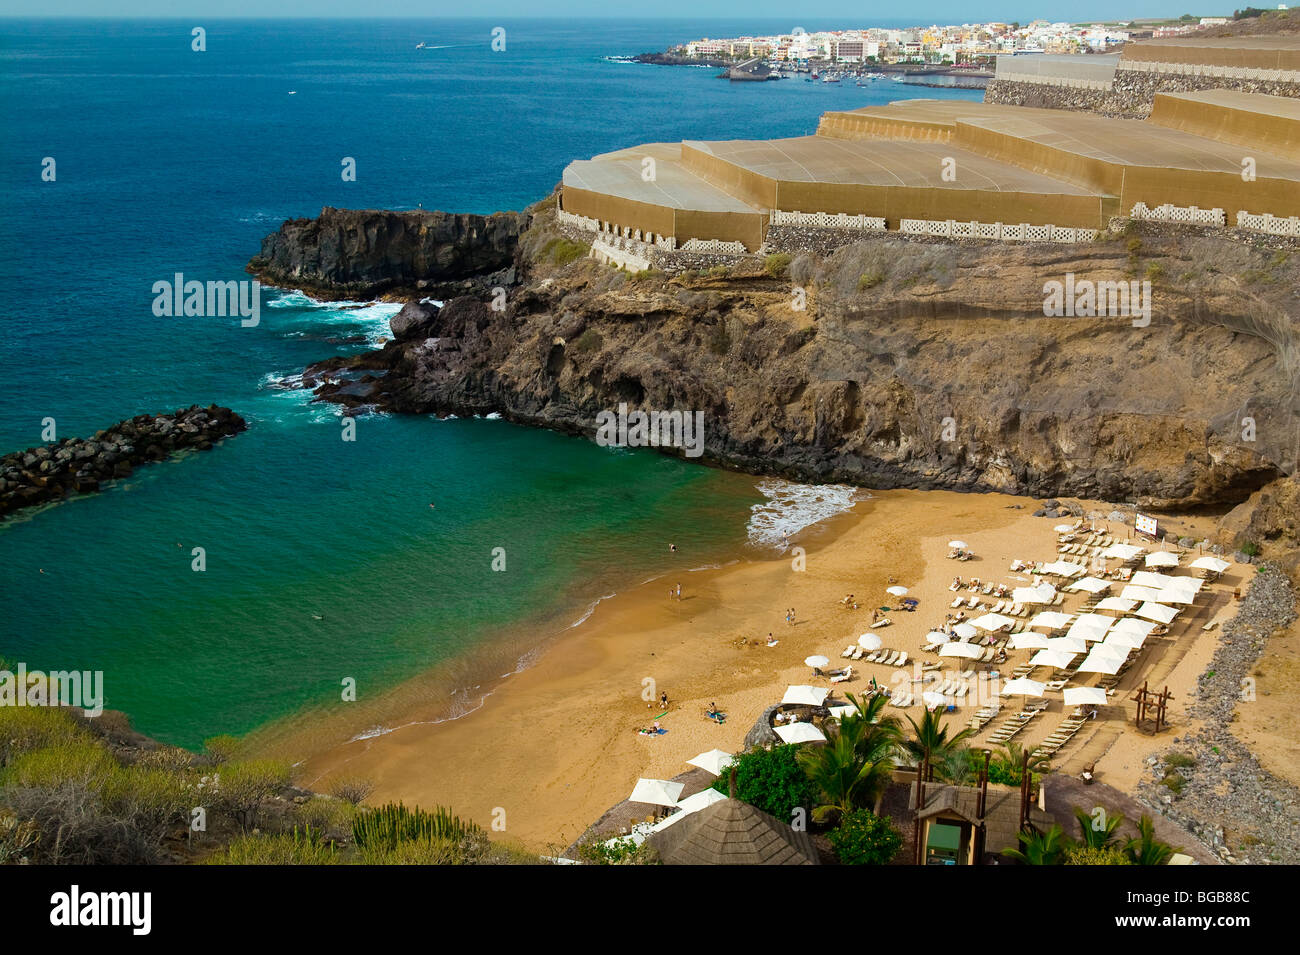 Playa De San Juan Tenerife Island Canaries Stock Photo Alamy